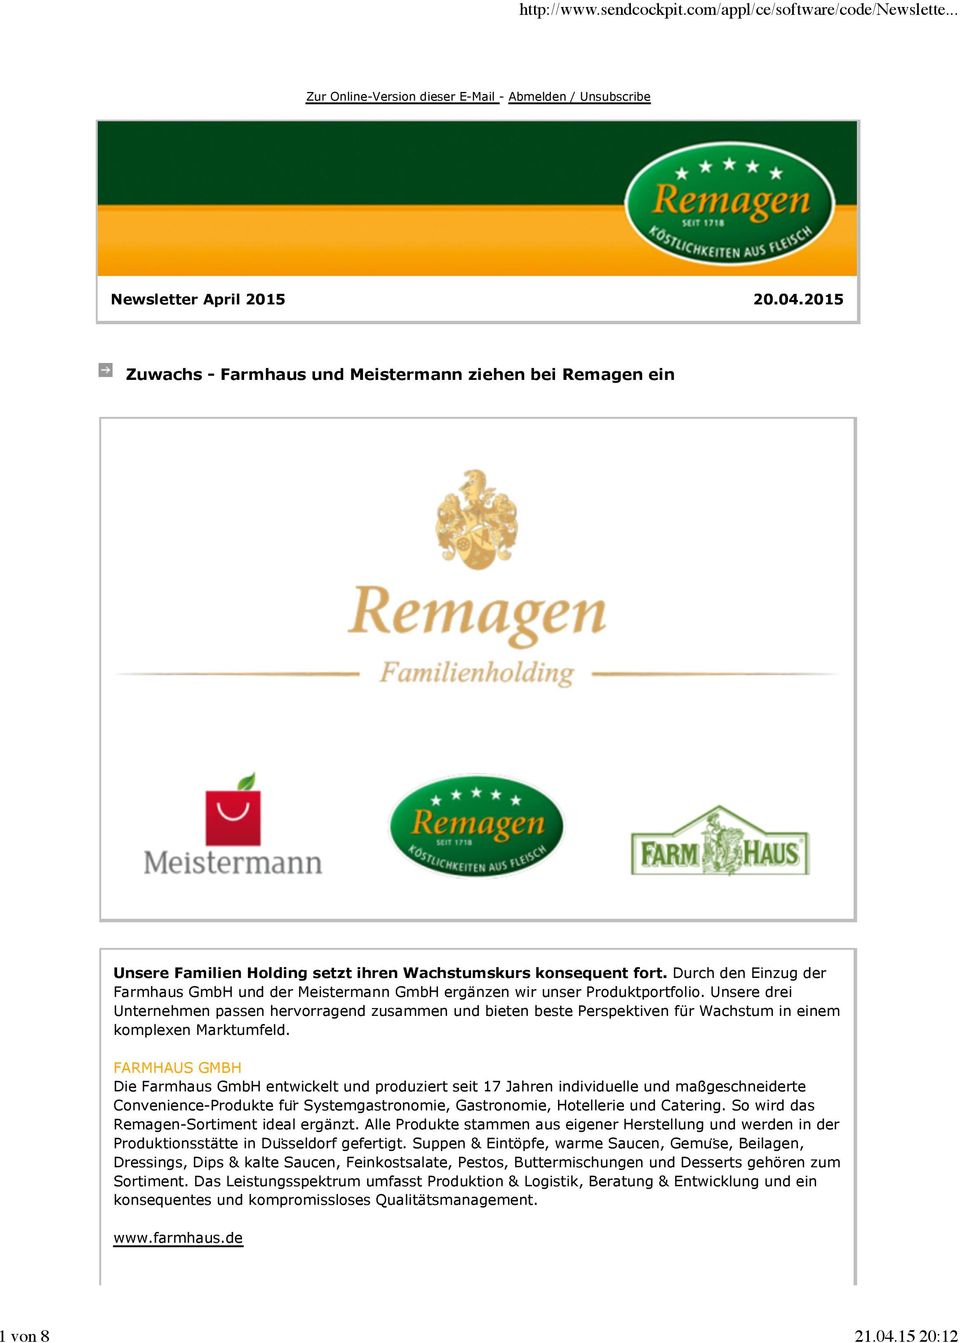 Durch den Einzug der Farmhaus GmbH und der Meistermann GmbH ergänzen wir unser Produktportfolio.